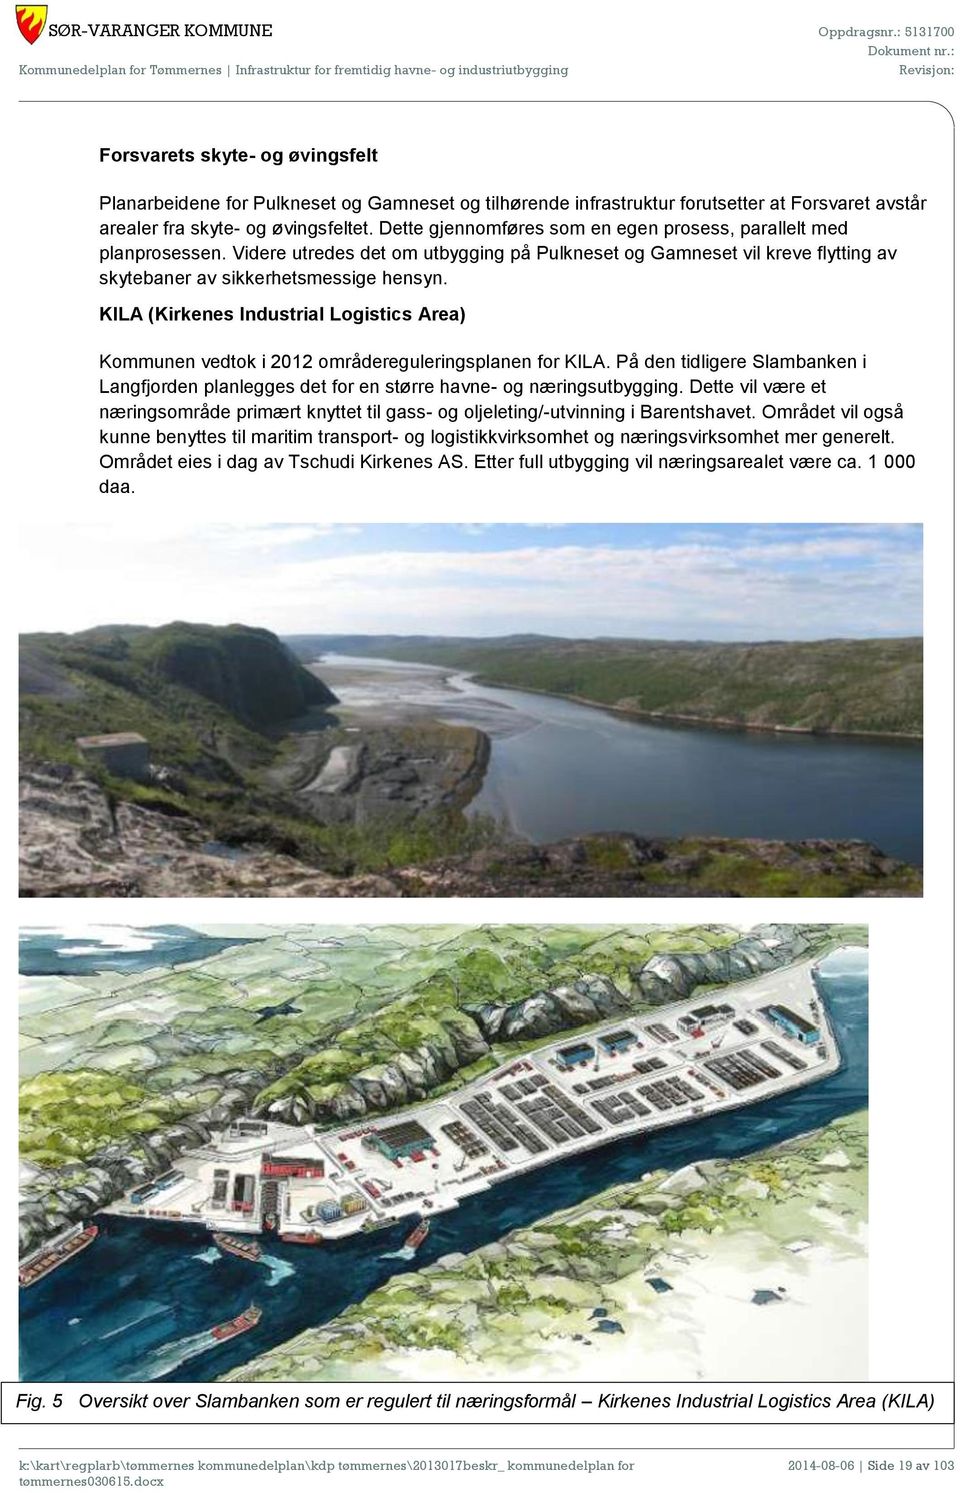 KILA (Kirkenes Industrial Logistics Area) Kommunen vedtok i 2012 områdereguleringsplanen for KILA. På den tidligere Slambanken i Langfjorden planlegges det for en større havne- og næringsutbygging.